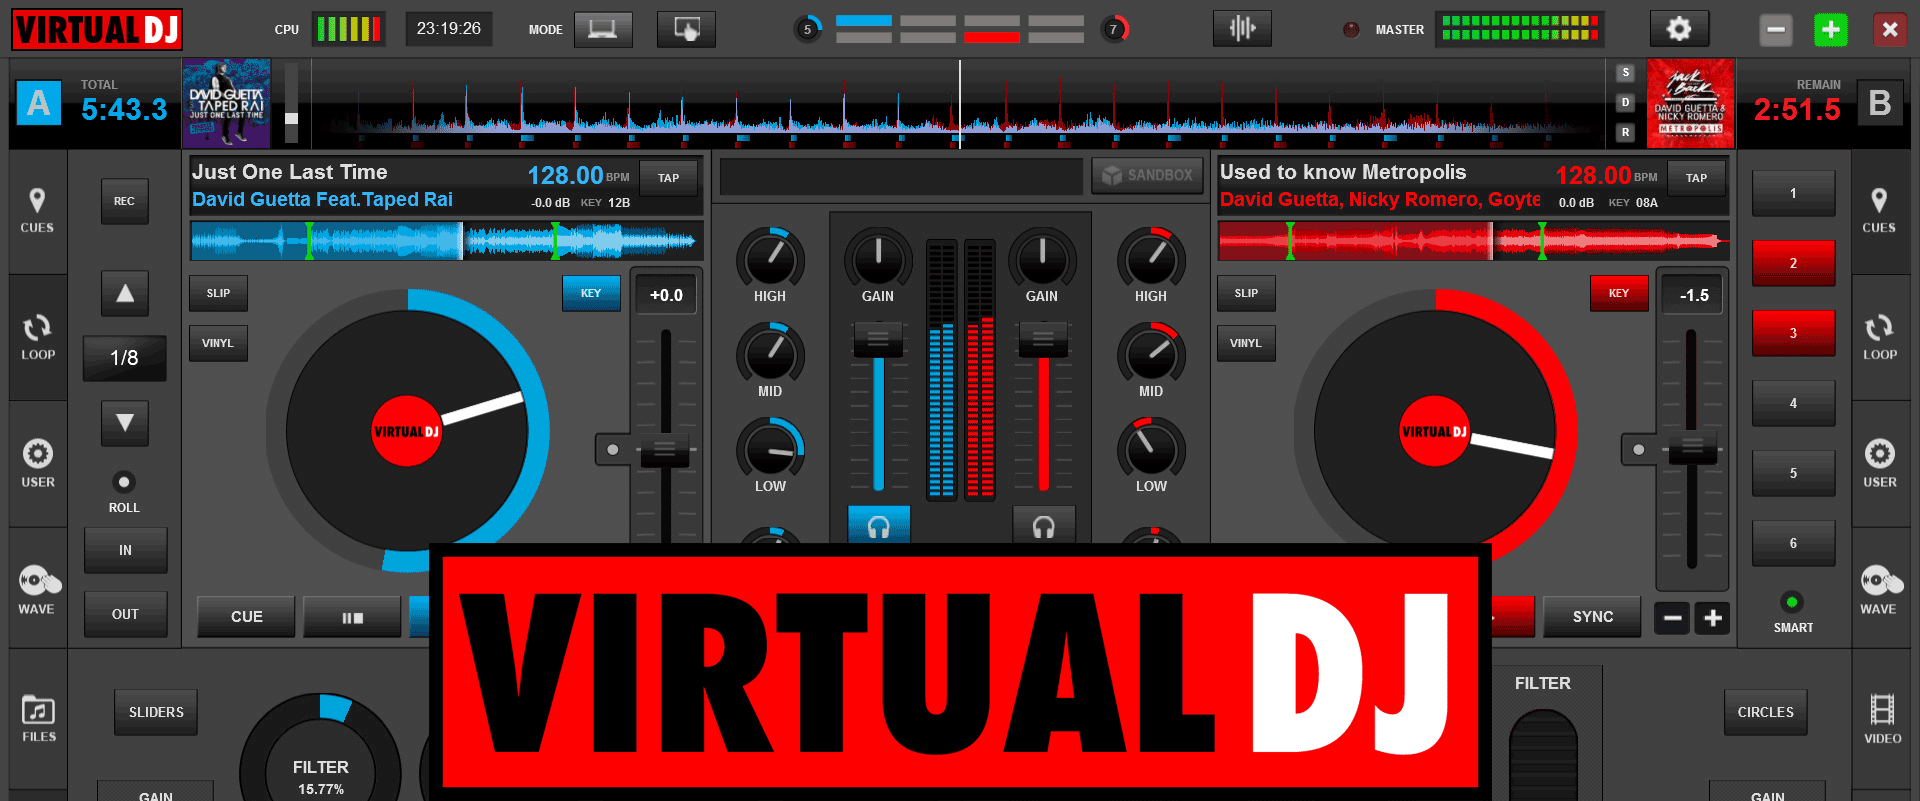 Virtual DJ Pro 2021 Crack 6781 Keygen With 8.5 Serial Number